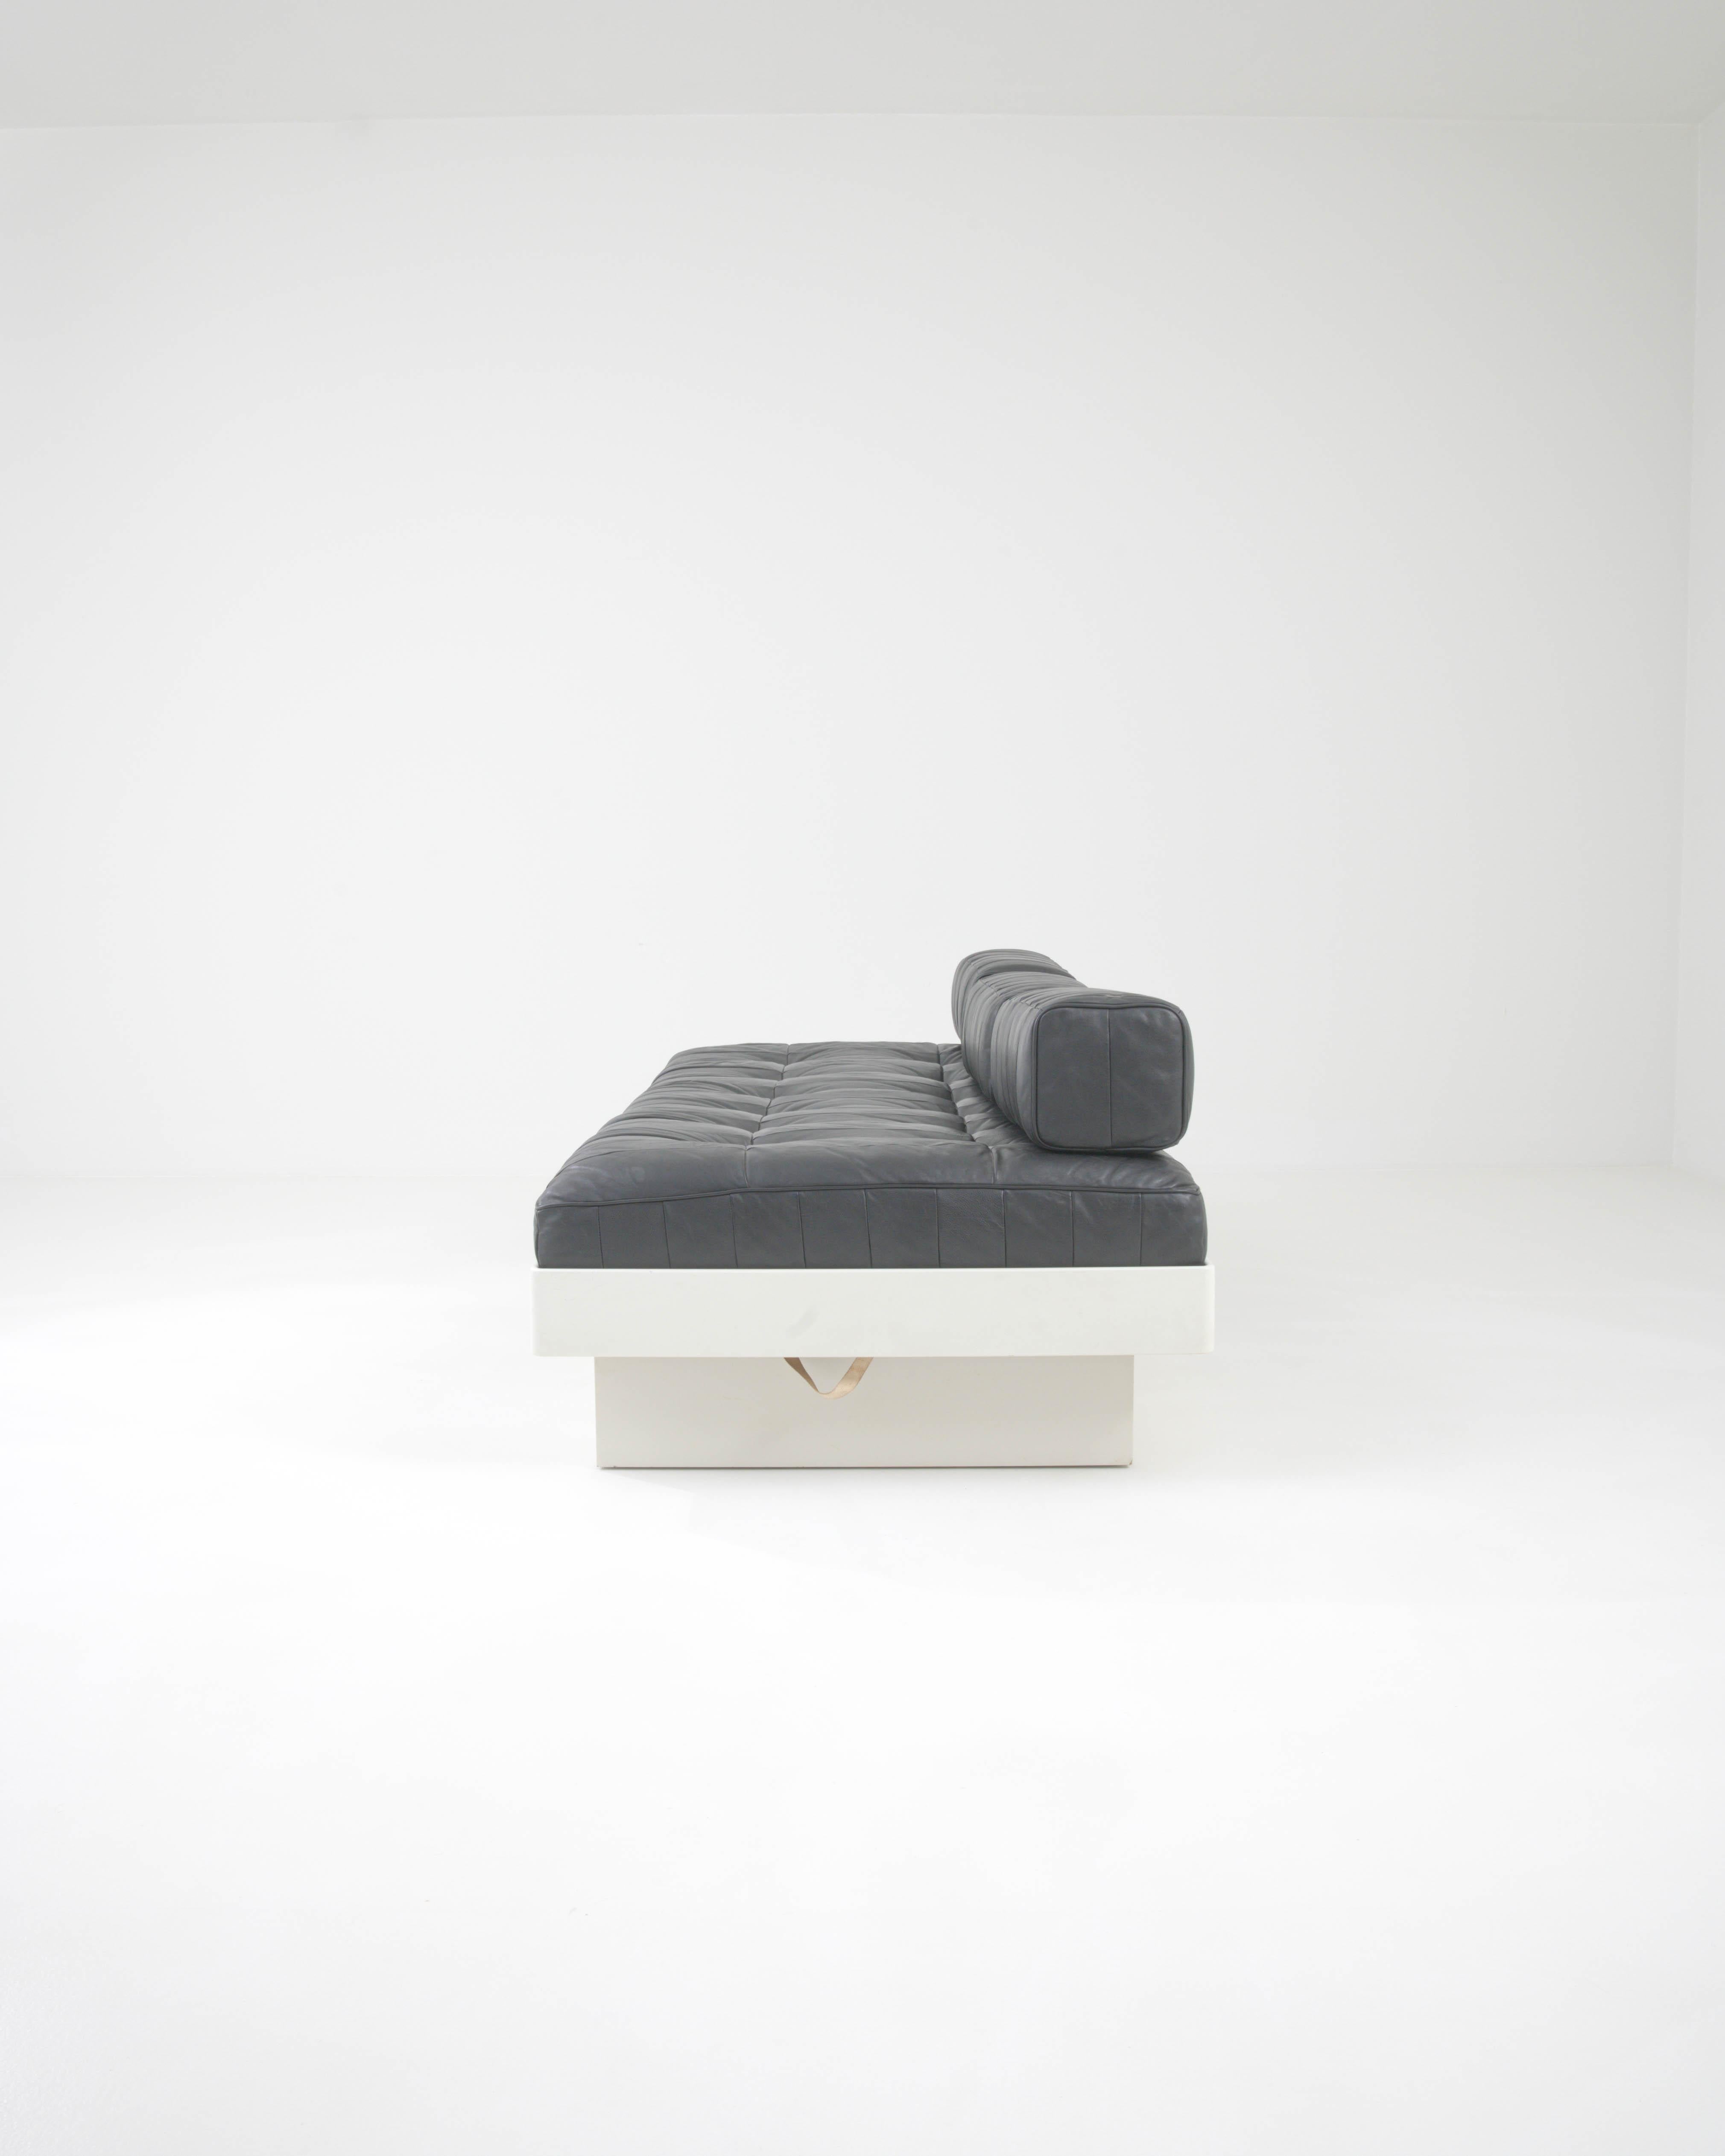 Découvrez la quintessence du luxe vintage avec ce lit de jour allemand du XXe siècle, une pièce qui allie magnifiquement l'artisanat classique au design moderne minimaliste. Le lit de jour est doté d'une base en bois robuste avec une finition crème